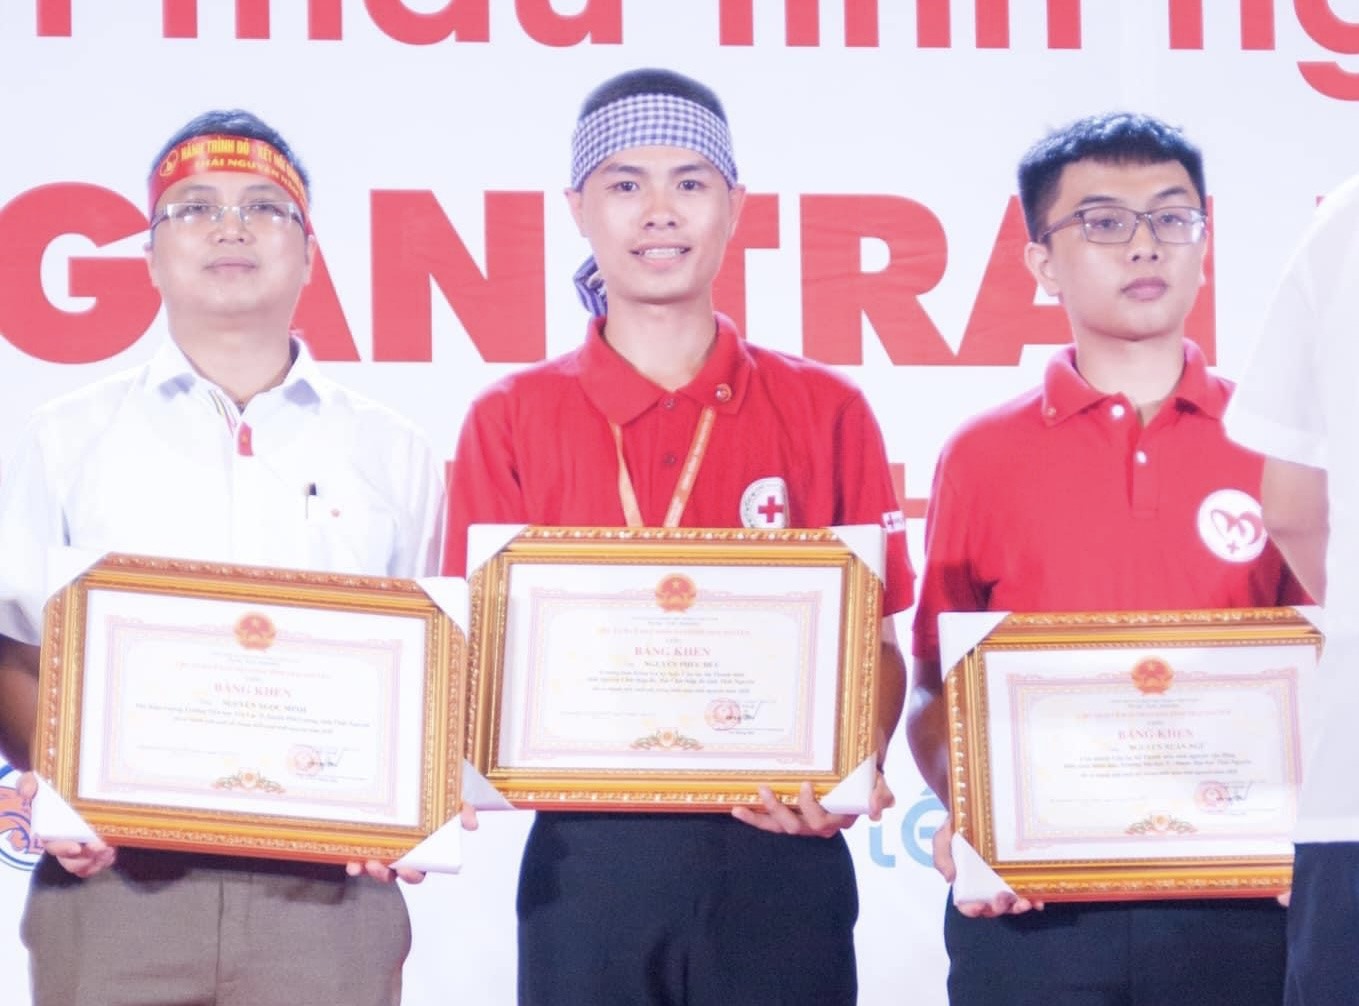 Nguyễn Phúc Đức (ở giữa) trong lần nhận bằng khen của Chủ tịch UBND tỉnh Thái Nguyên về những đóng góp trong hoạt động hiến máu.